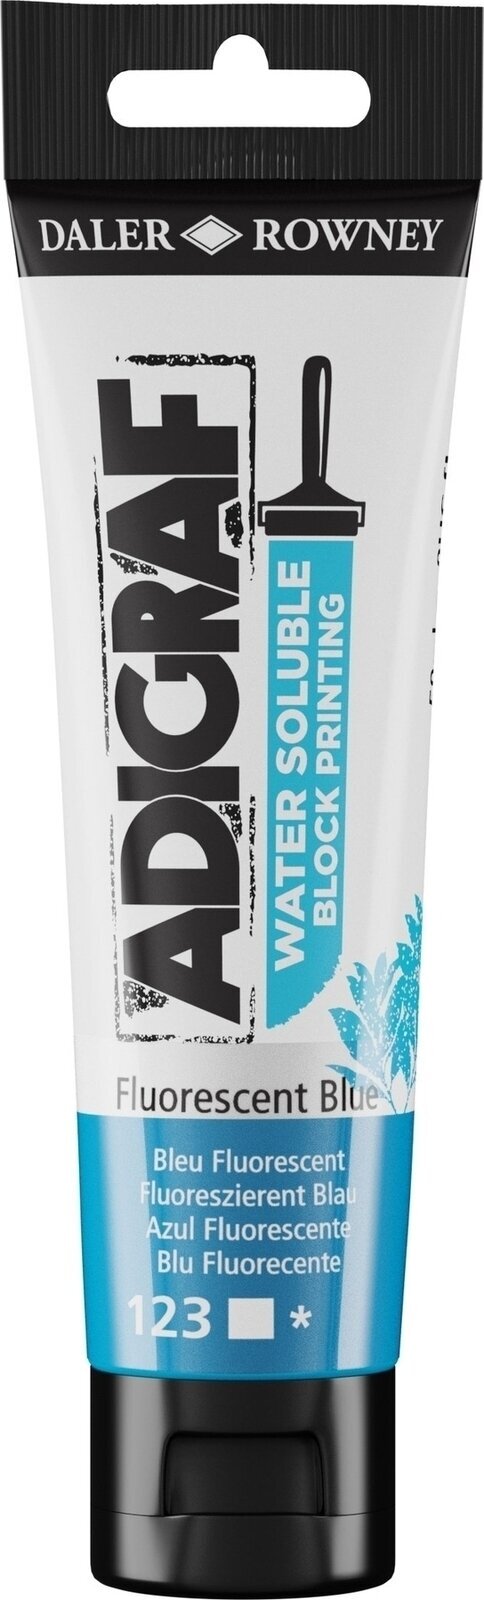 Χρώμα για λινογραφία Daler Rowney Adigraf Block Printing Water Soluble Colour Χρώμα για λινογραφία Fluorescent Blue 59 ml